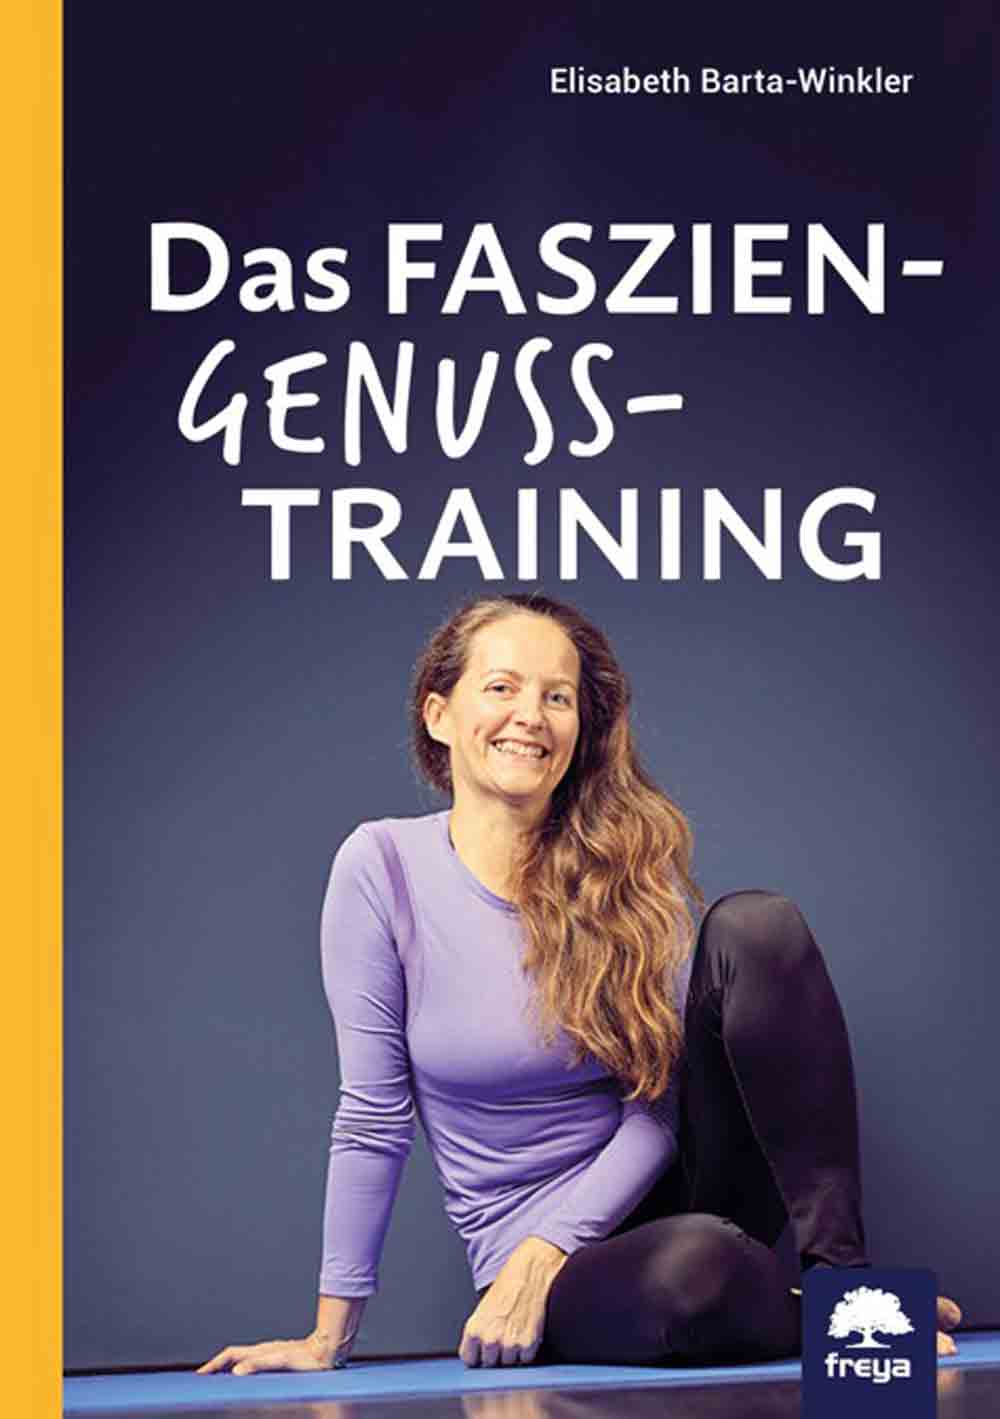 Anzeige: Lesetipps für Gütersloh: Elisabeth Barta-Winkler, »Das Faszien-Genusstraining«